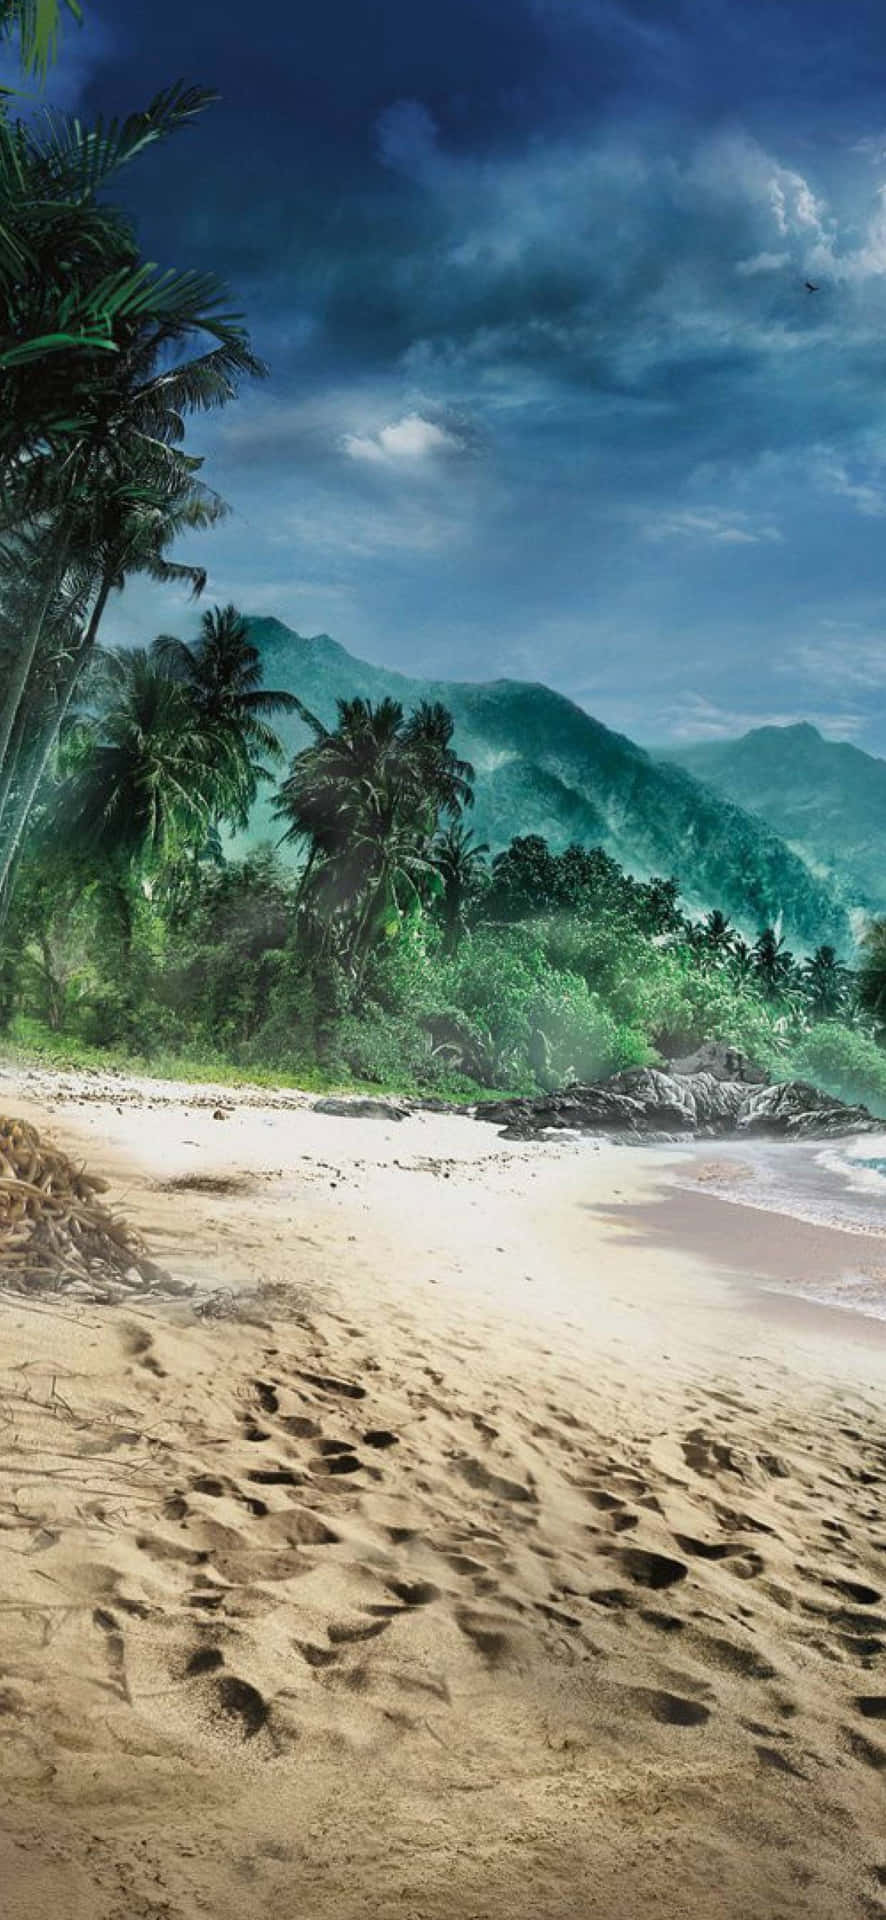 Fondode Pantalla Iphone X De Far Cry 3 Con Playa Y Árboles.